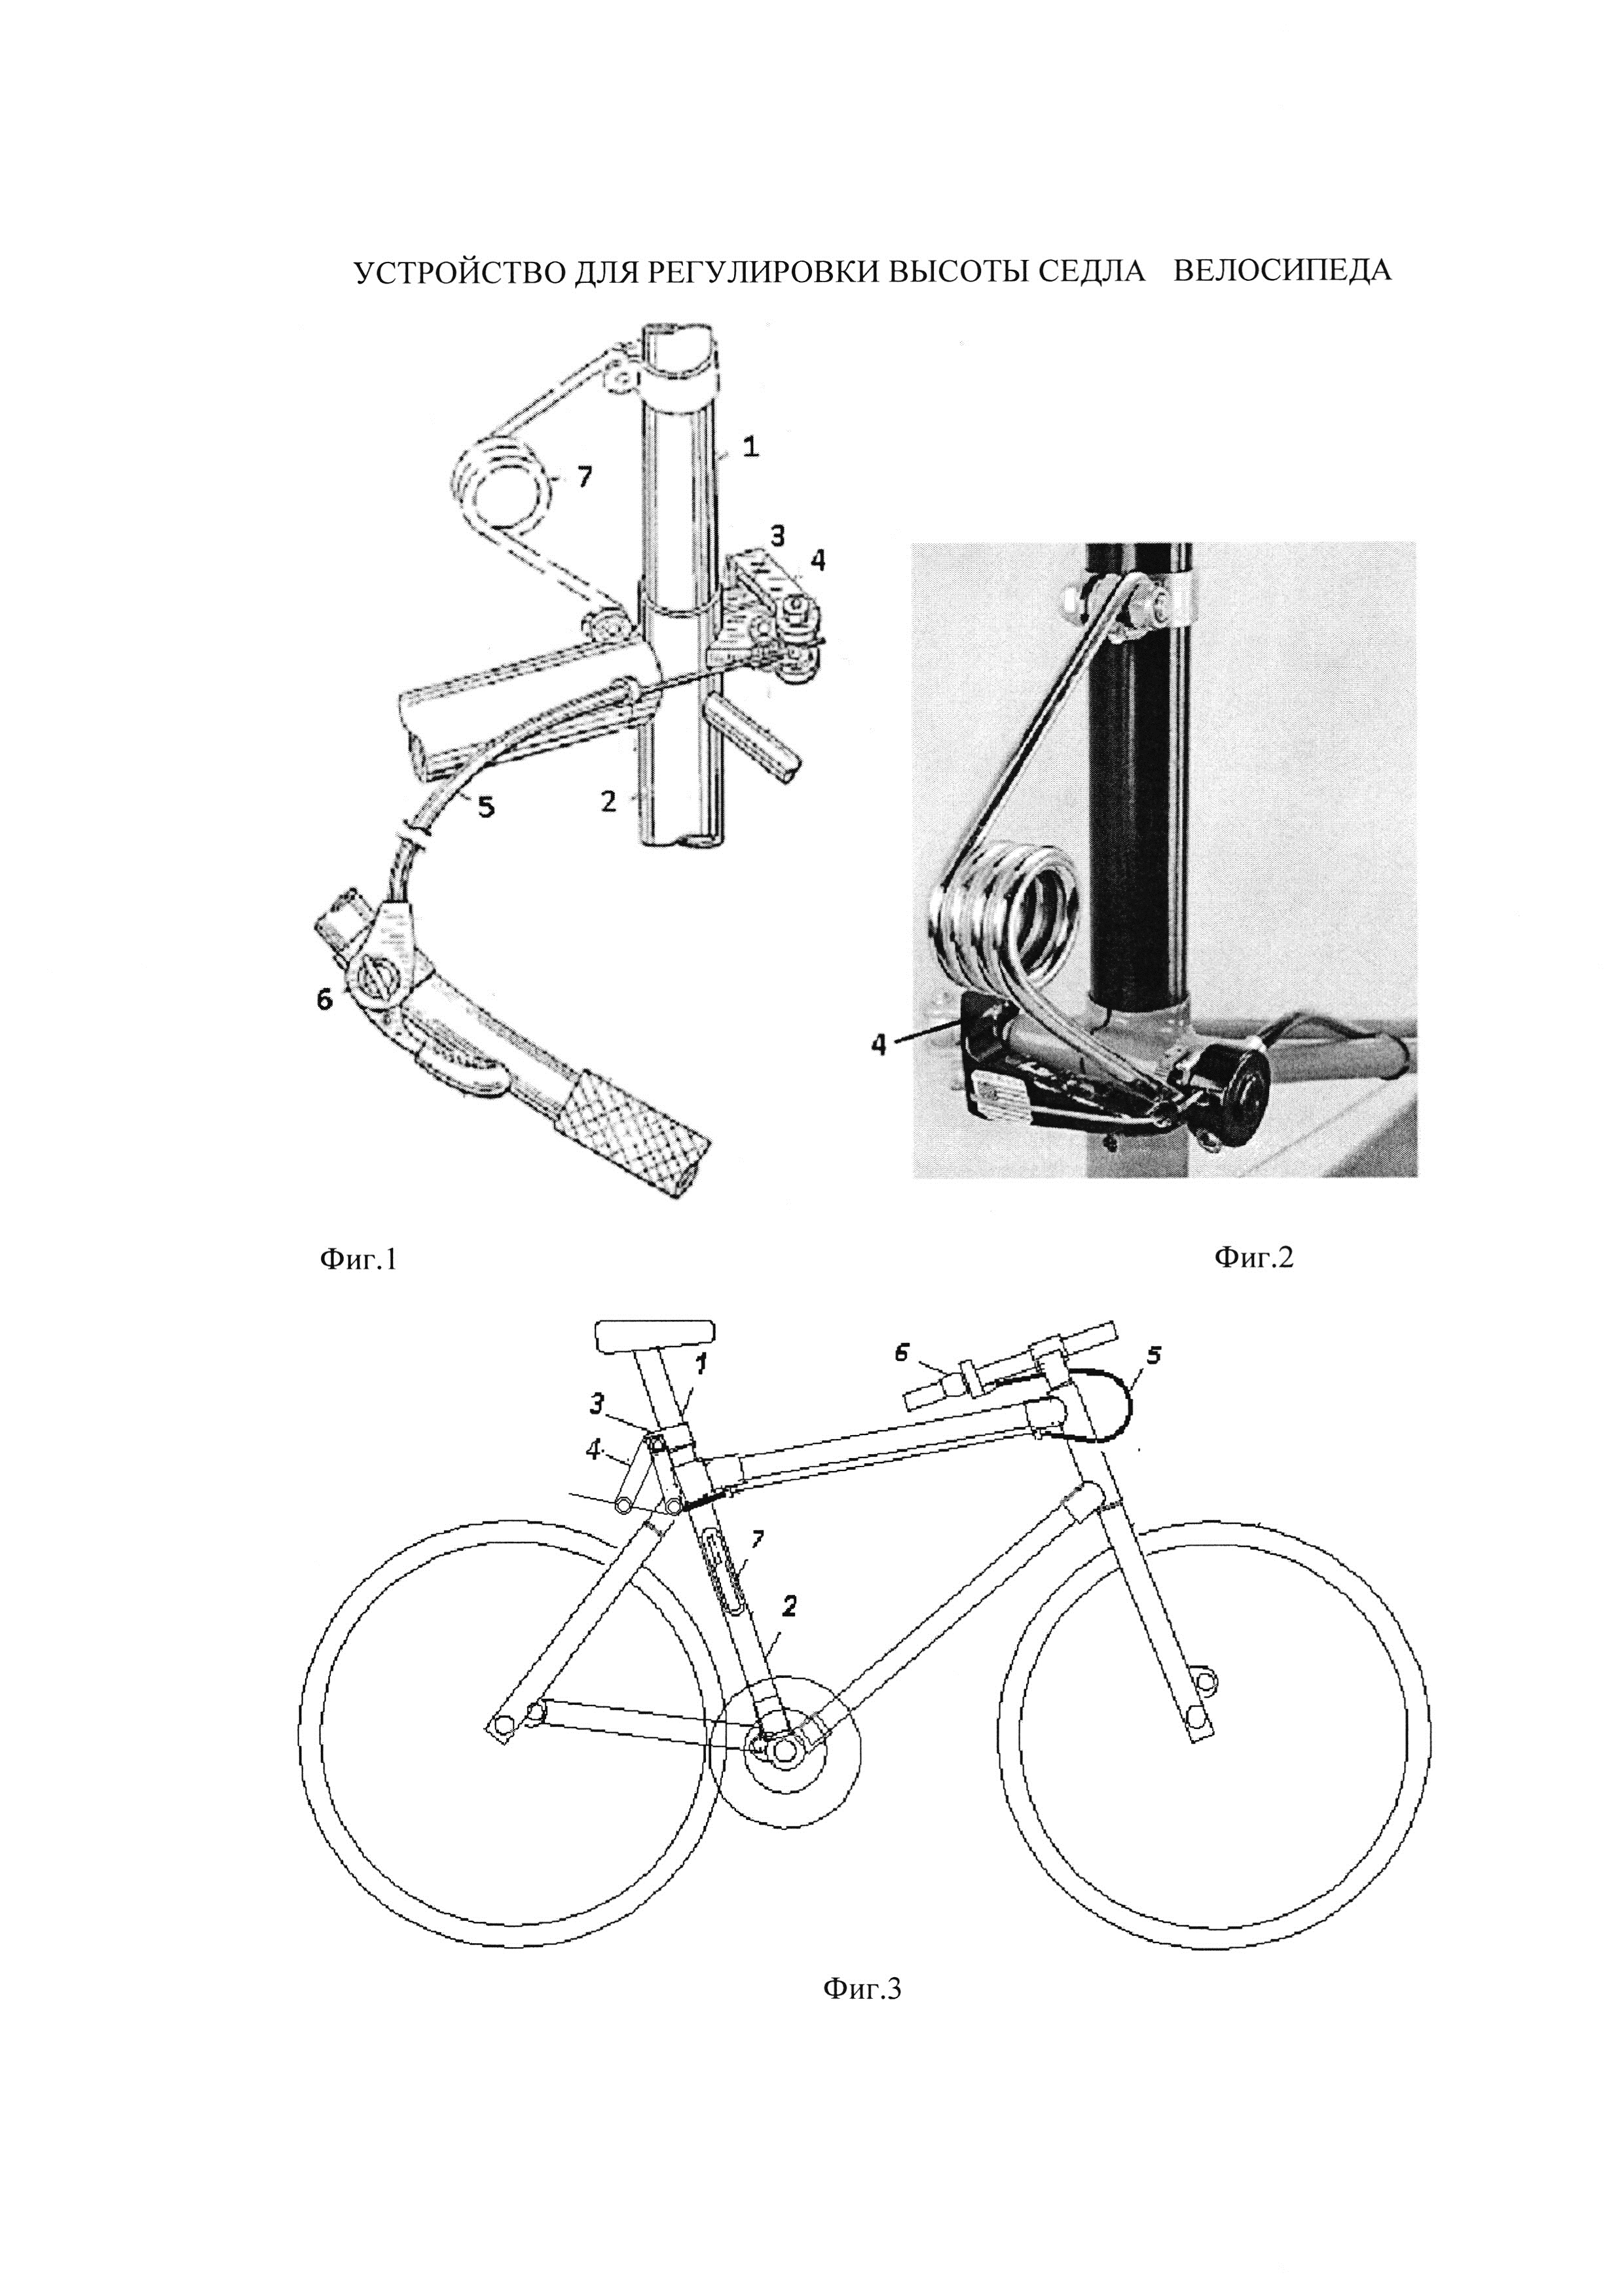 Схема седла велосипеда